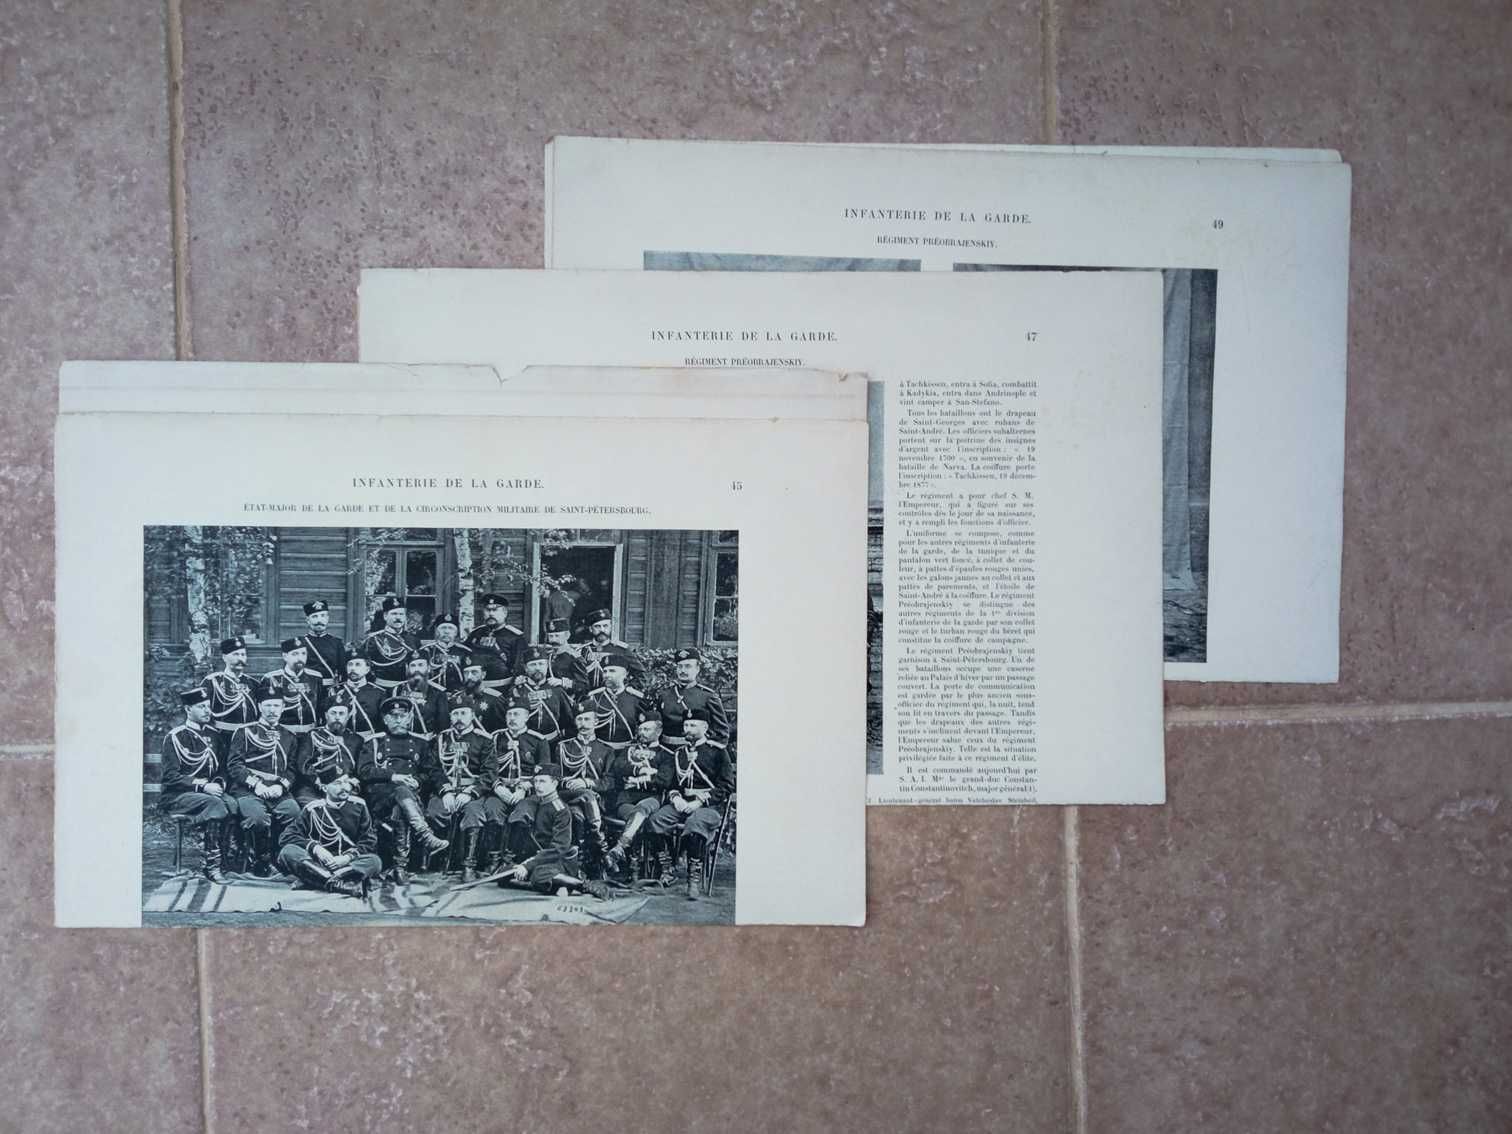 Иллюстрации форм разных родов войск царской армии 20 таблиц.